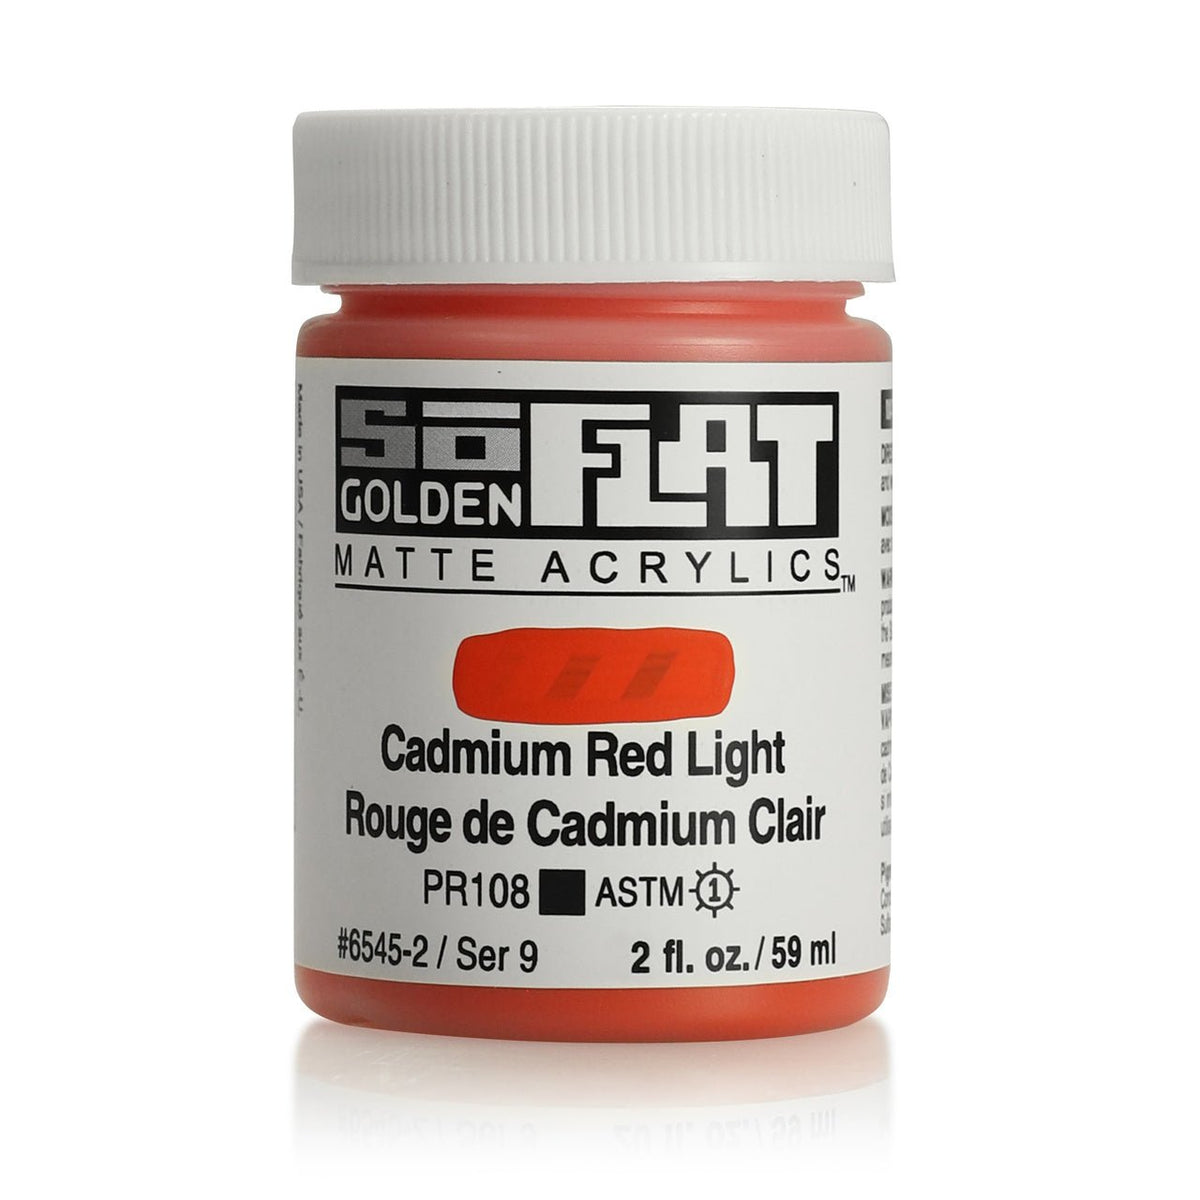 Golden SoFlat Matte Acrylic Paint - Cadmium Red Light 2 oz jar - merriartist.com